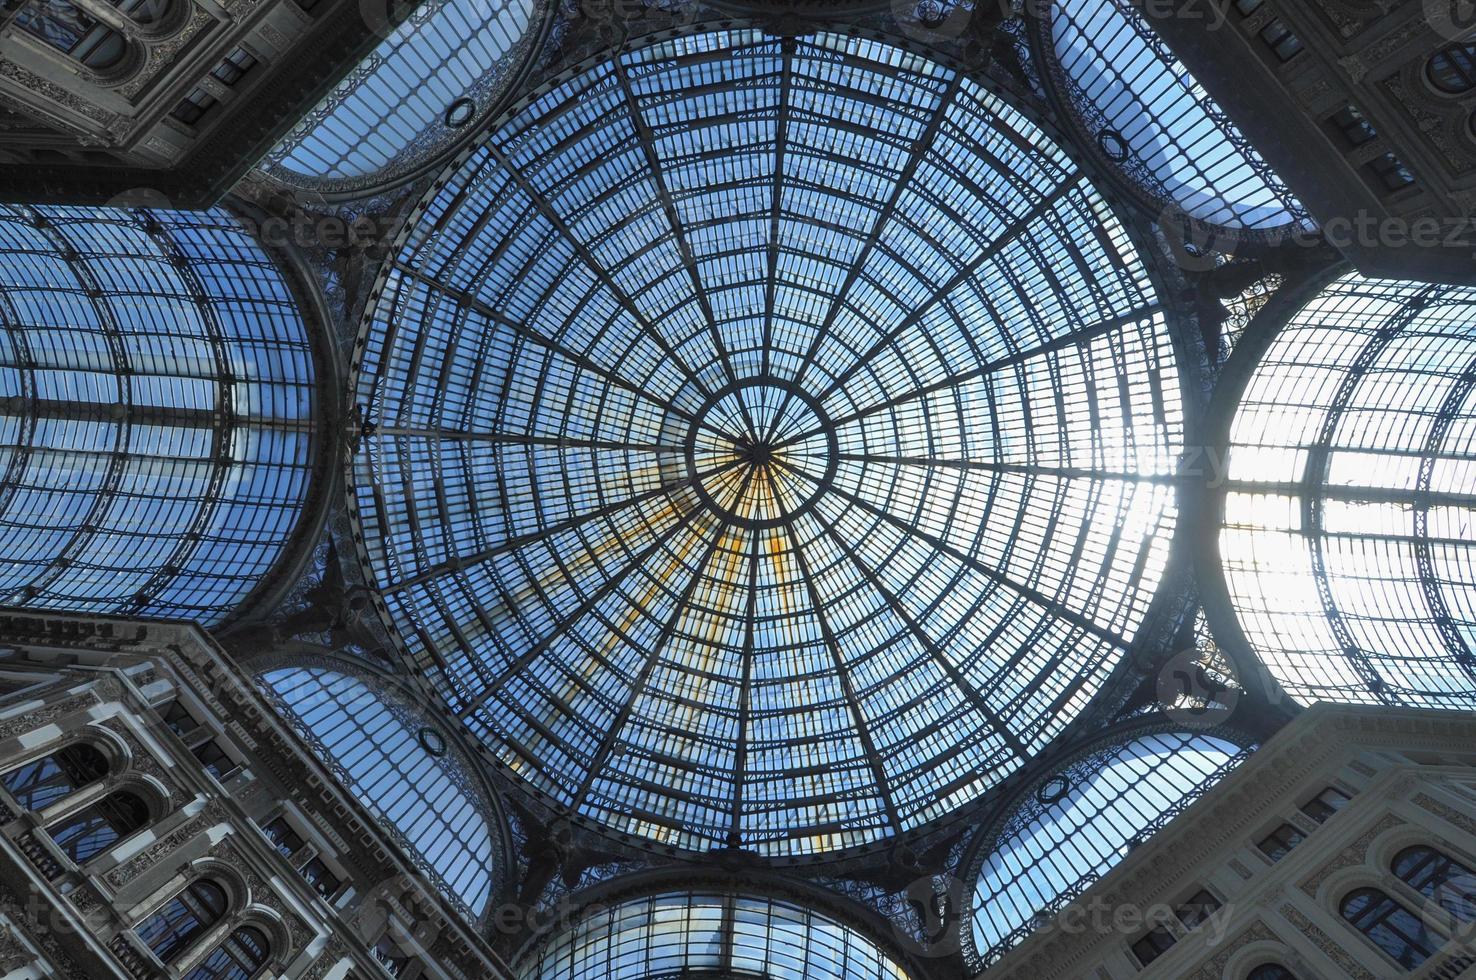 Galleria Umberto I in Naples photo